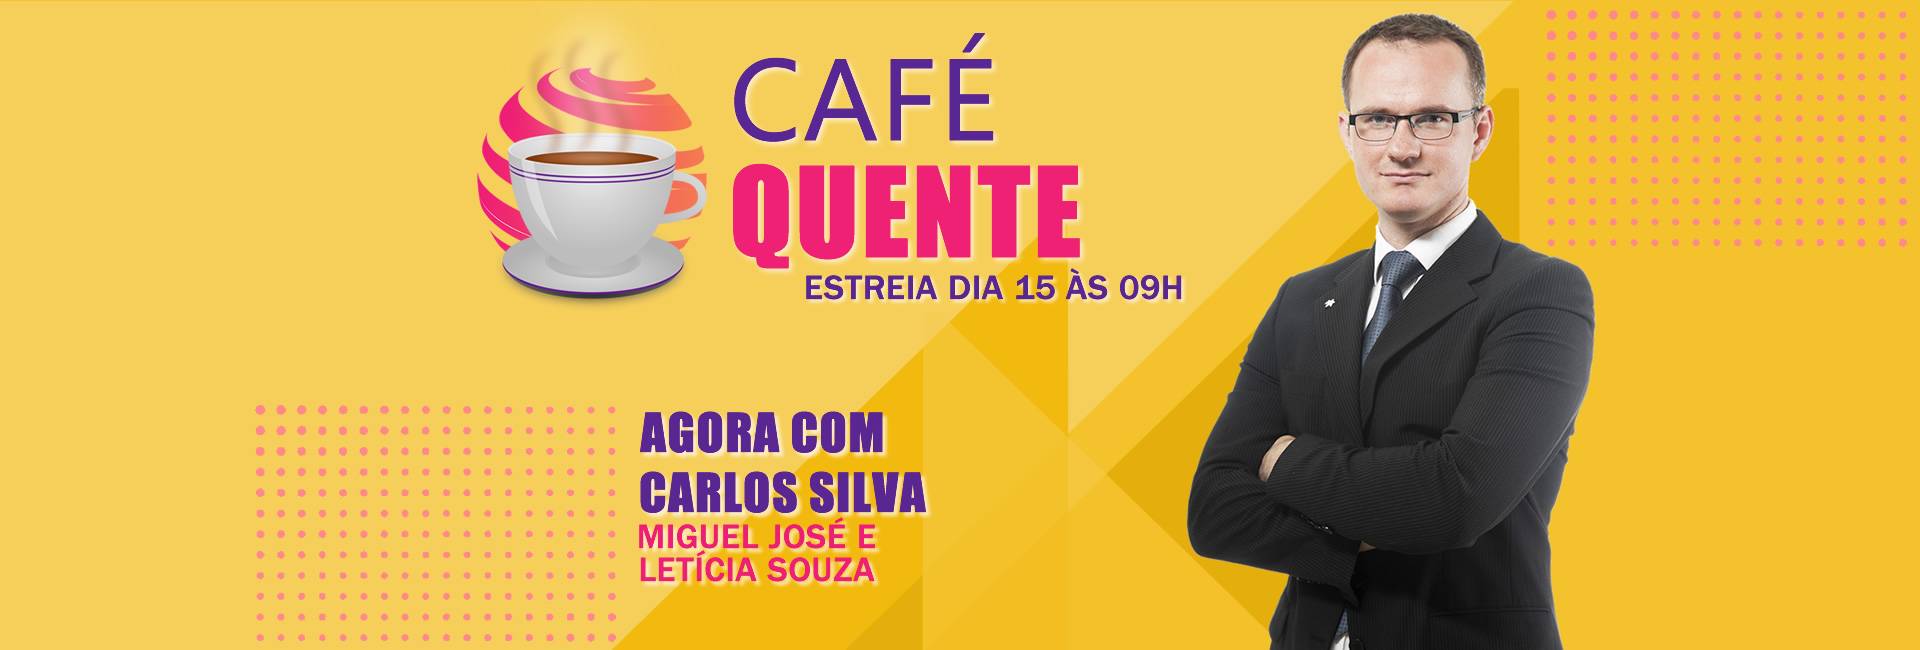 Programa Café quente estreia dia 15 às 09 Horas